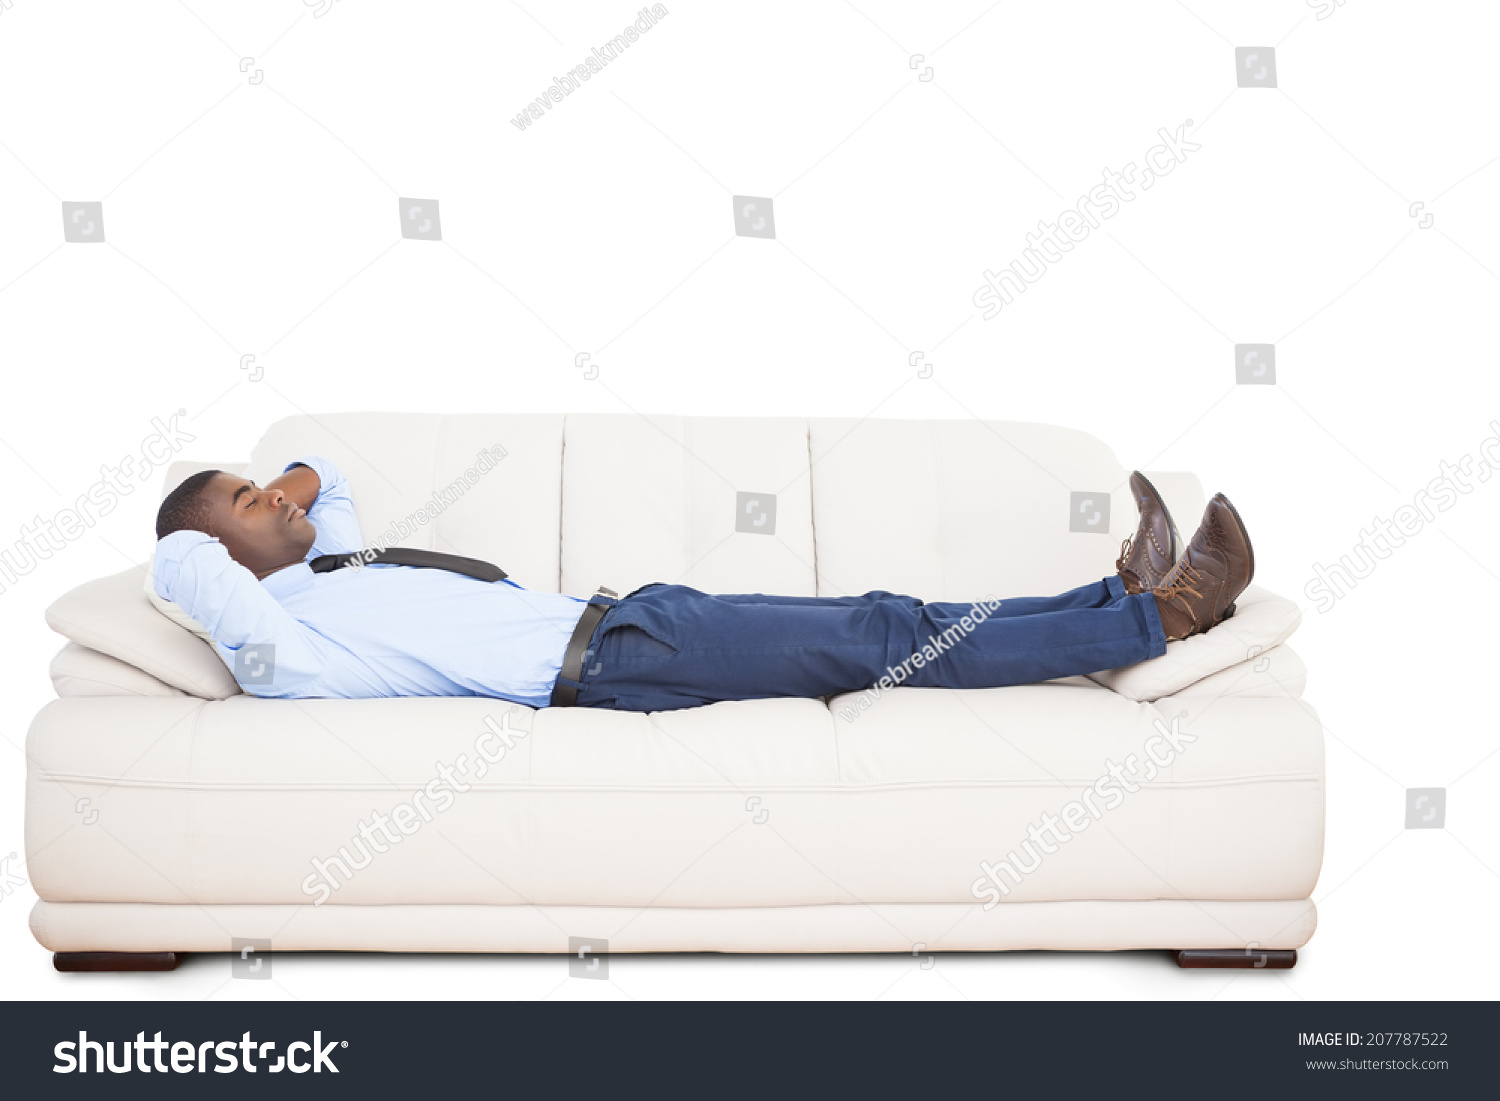 Лежали или лижали. Человек на диване. Человек лежит на диване. Пульт лежит на диване. Худой лежащий человек на диване.